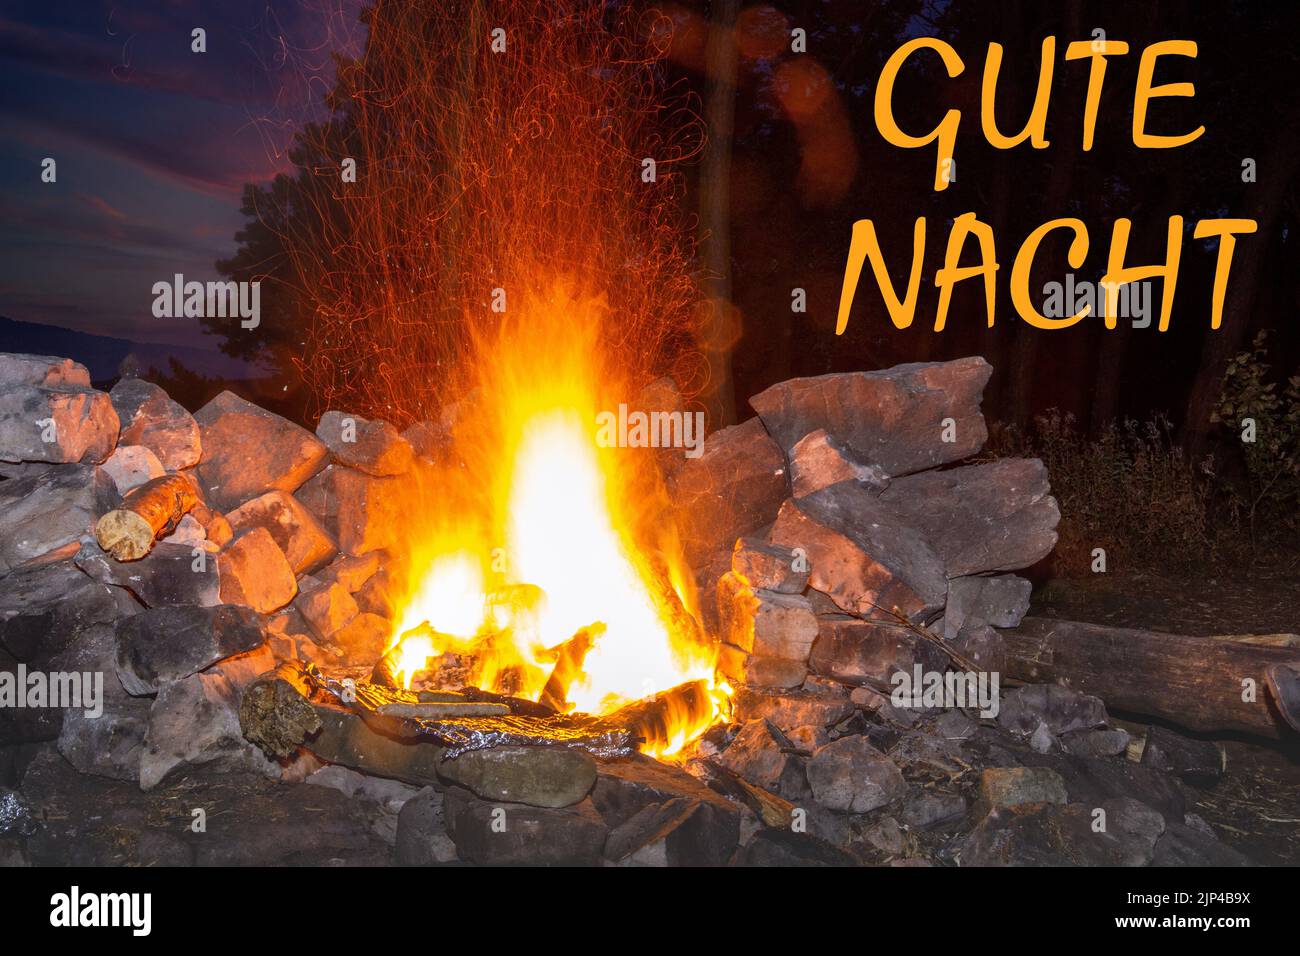 Nahaufnahme von einem Lagerfeuer mit dem Schriftzug Gute Nacht Stock Photo